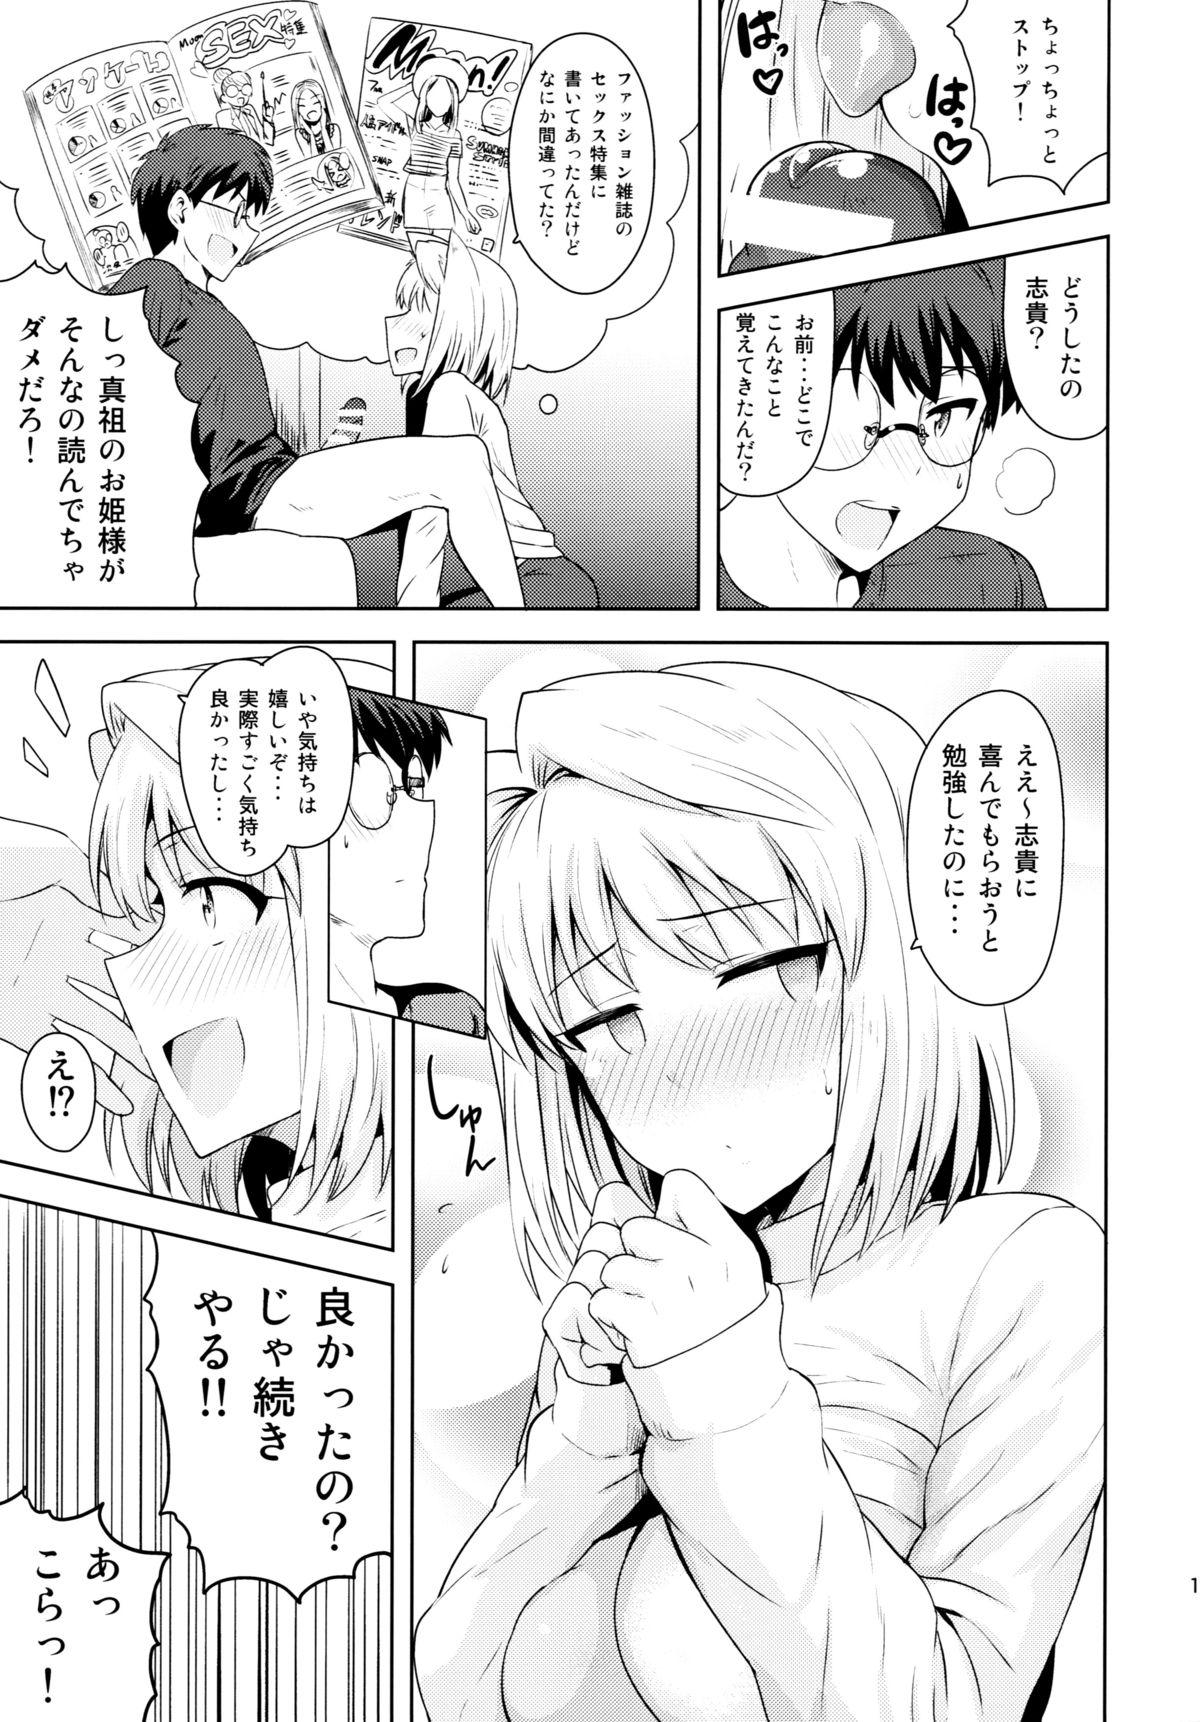 Mallu Aru Hi no Futari - Tsukihime Hard Sex - Page 10